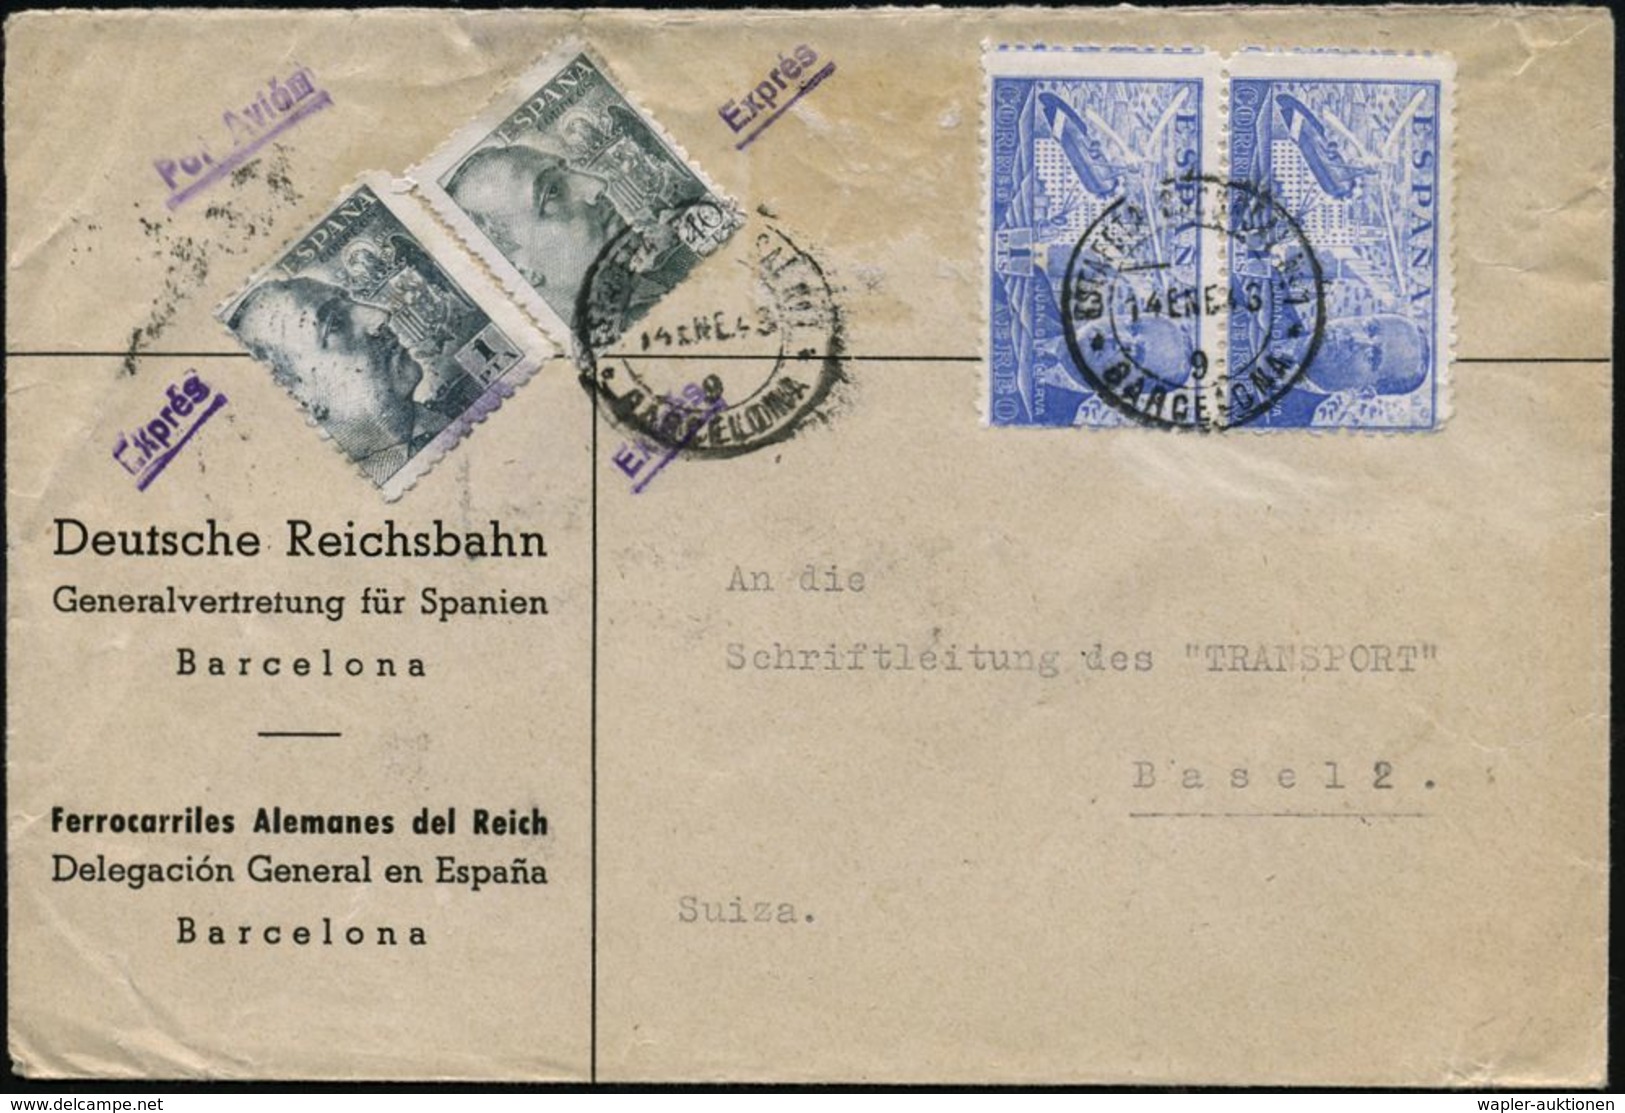 EISENBAHN-GESELLSCHAFTEN / REICHSBAHN / BUNDESBAHN : SPANIEN 1943 (14.1.) Dienst-Bf: Deutsche Reichsbahn/Generalvertretu - Trains